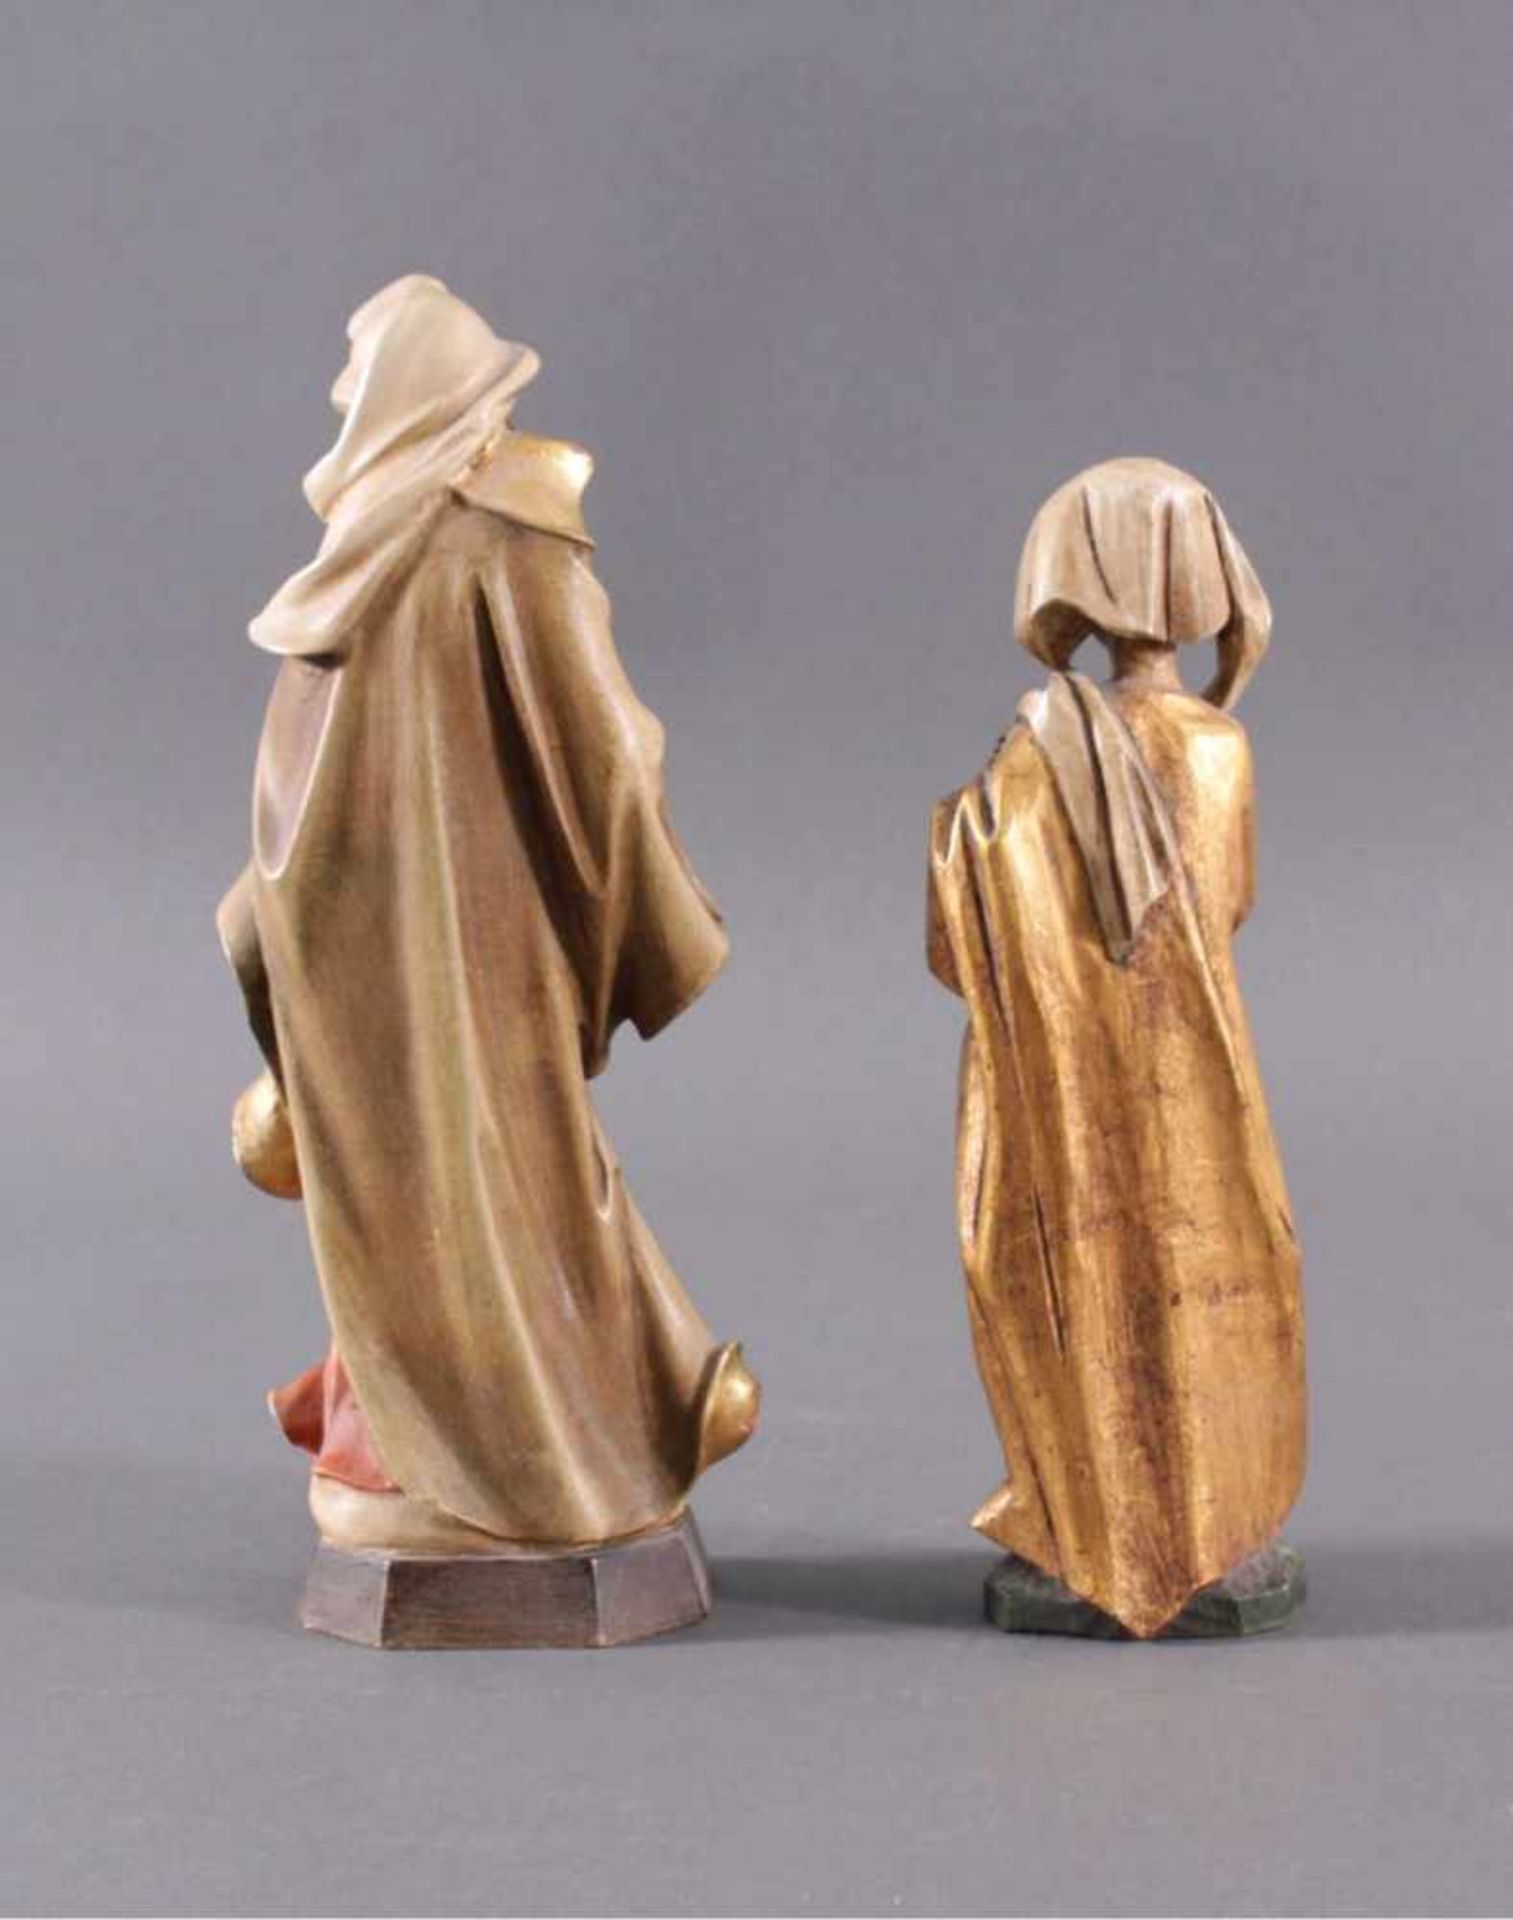 Zwei Heilige HolzfigurenHolz, farbig gefasst, Gold staffiert, auf Sockel.Die Heilige Elisabeth von - Bild 2 aus 2